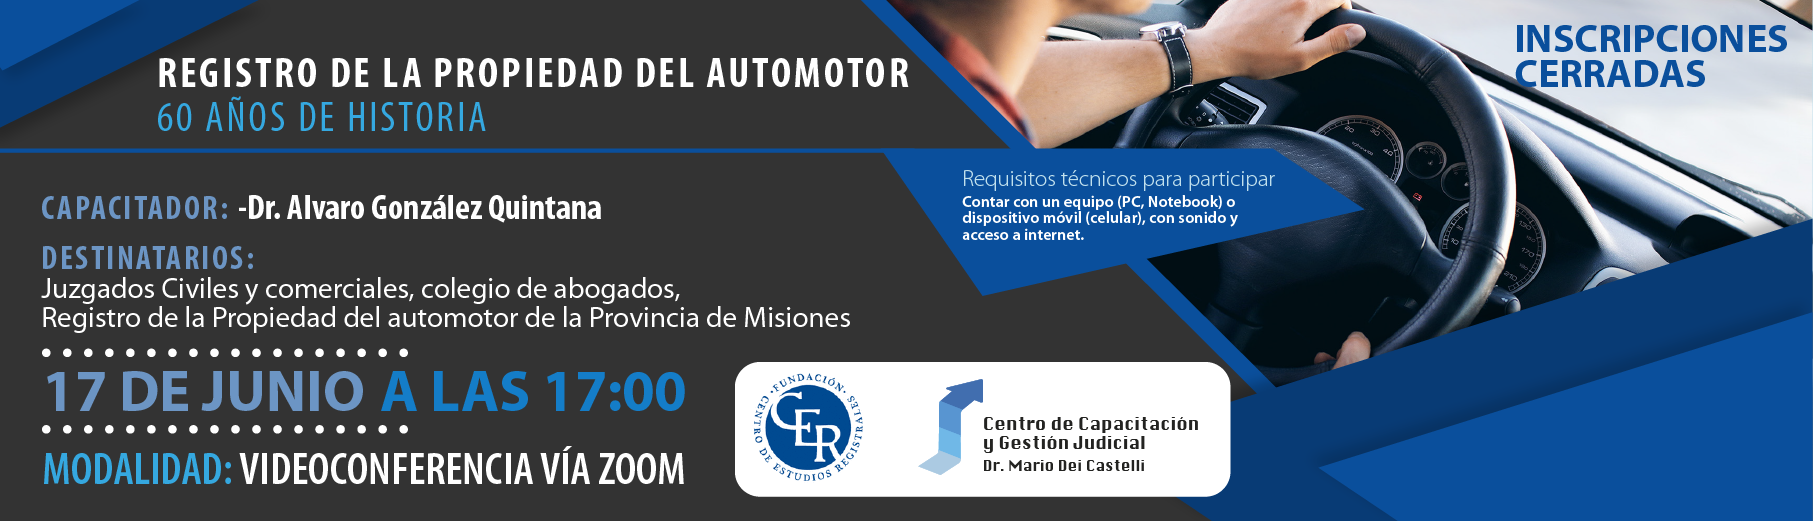 InC_Registro_de_la_Propiedad_del_automotor-01